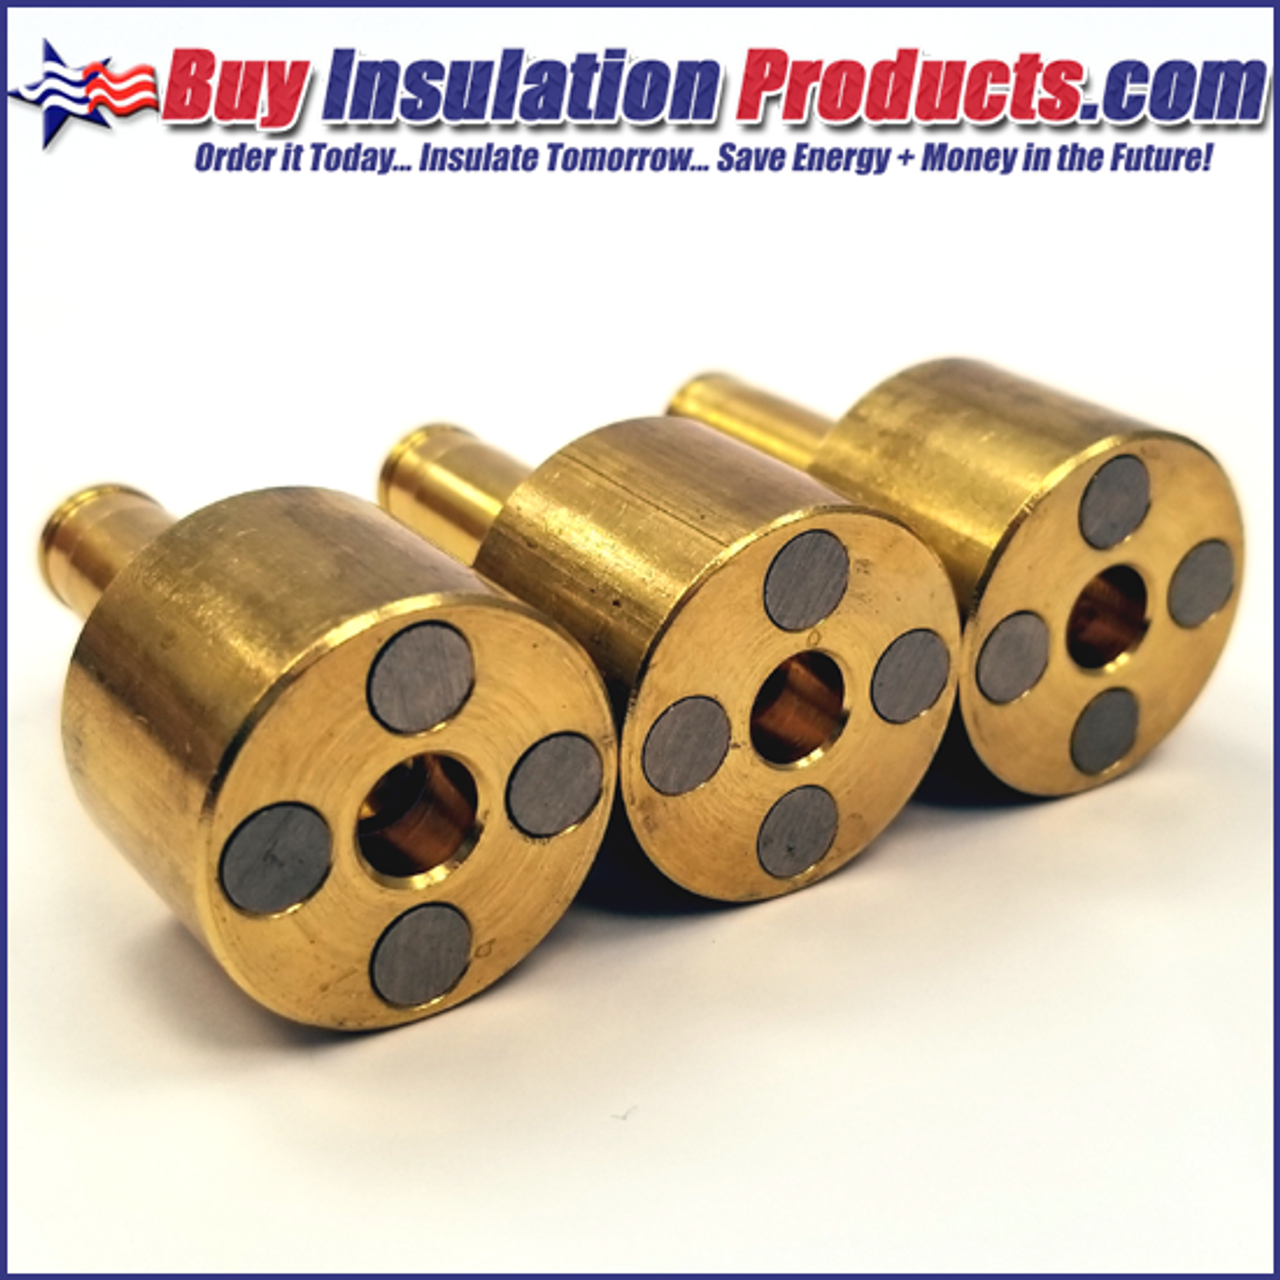 højen at føre Spis aftensmad Brass Magnetic Collets - 3 Pack | Buy Insulation Products